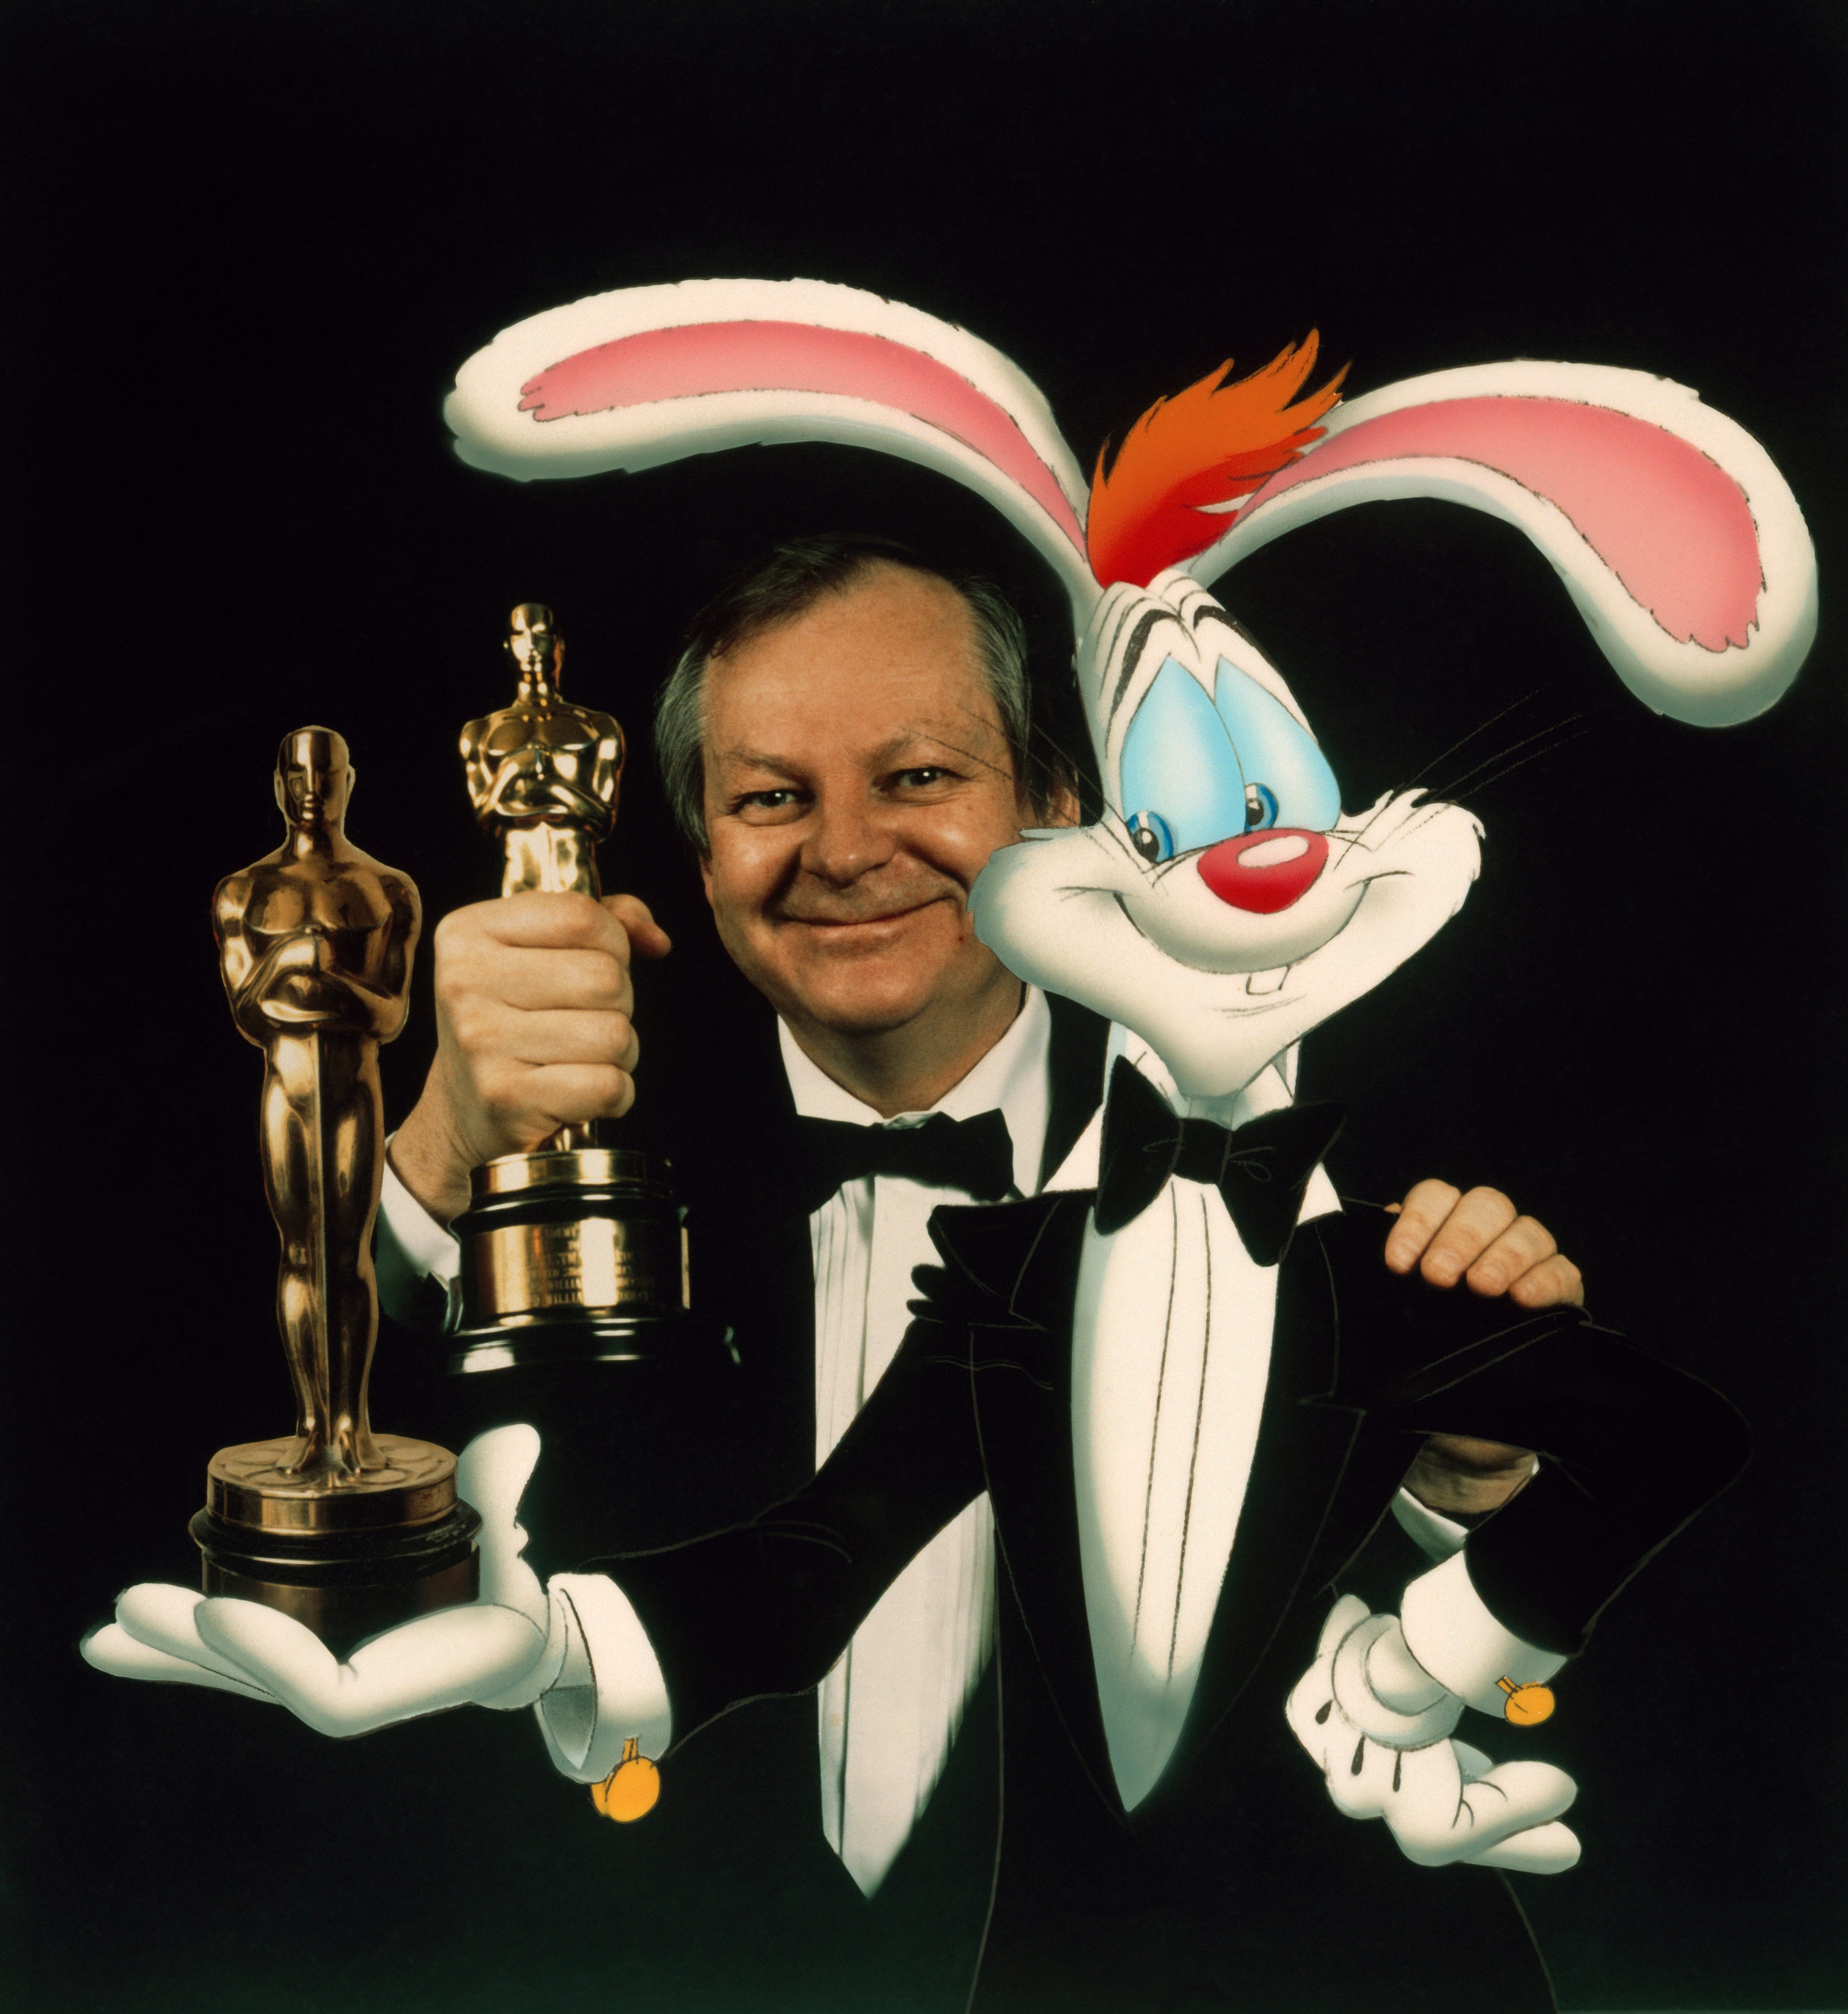 Richard Williams, 'Who Framed Roger Rabbit' animator, dies